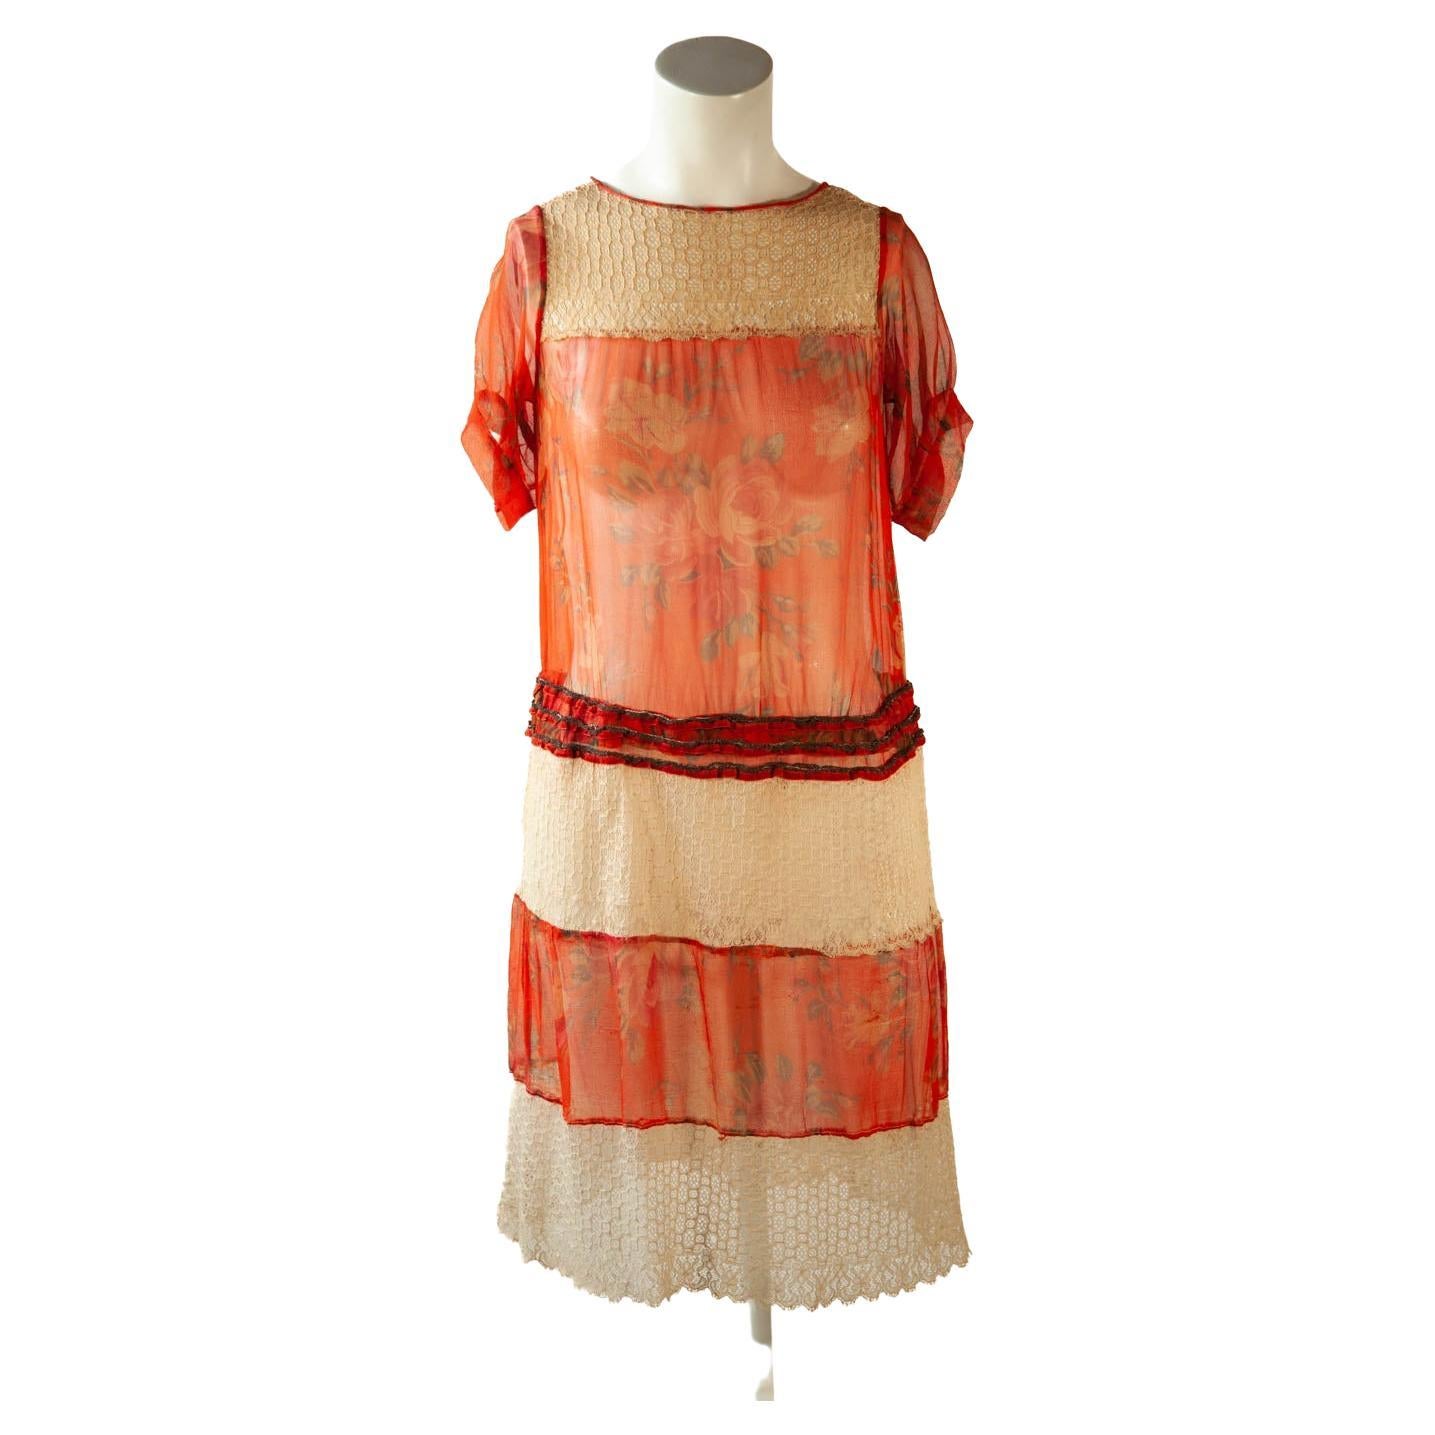 Robe en mousseline de soie orange 100 % vintage, années 1920